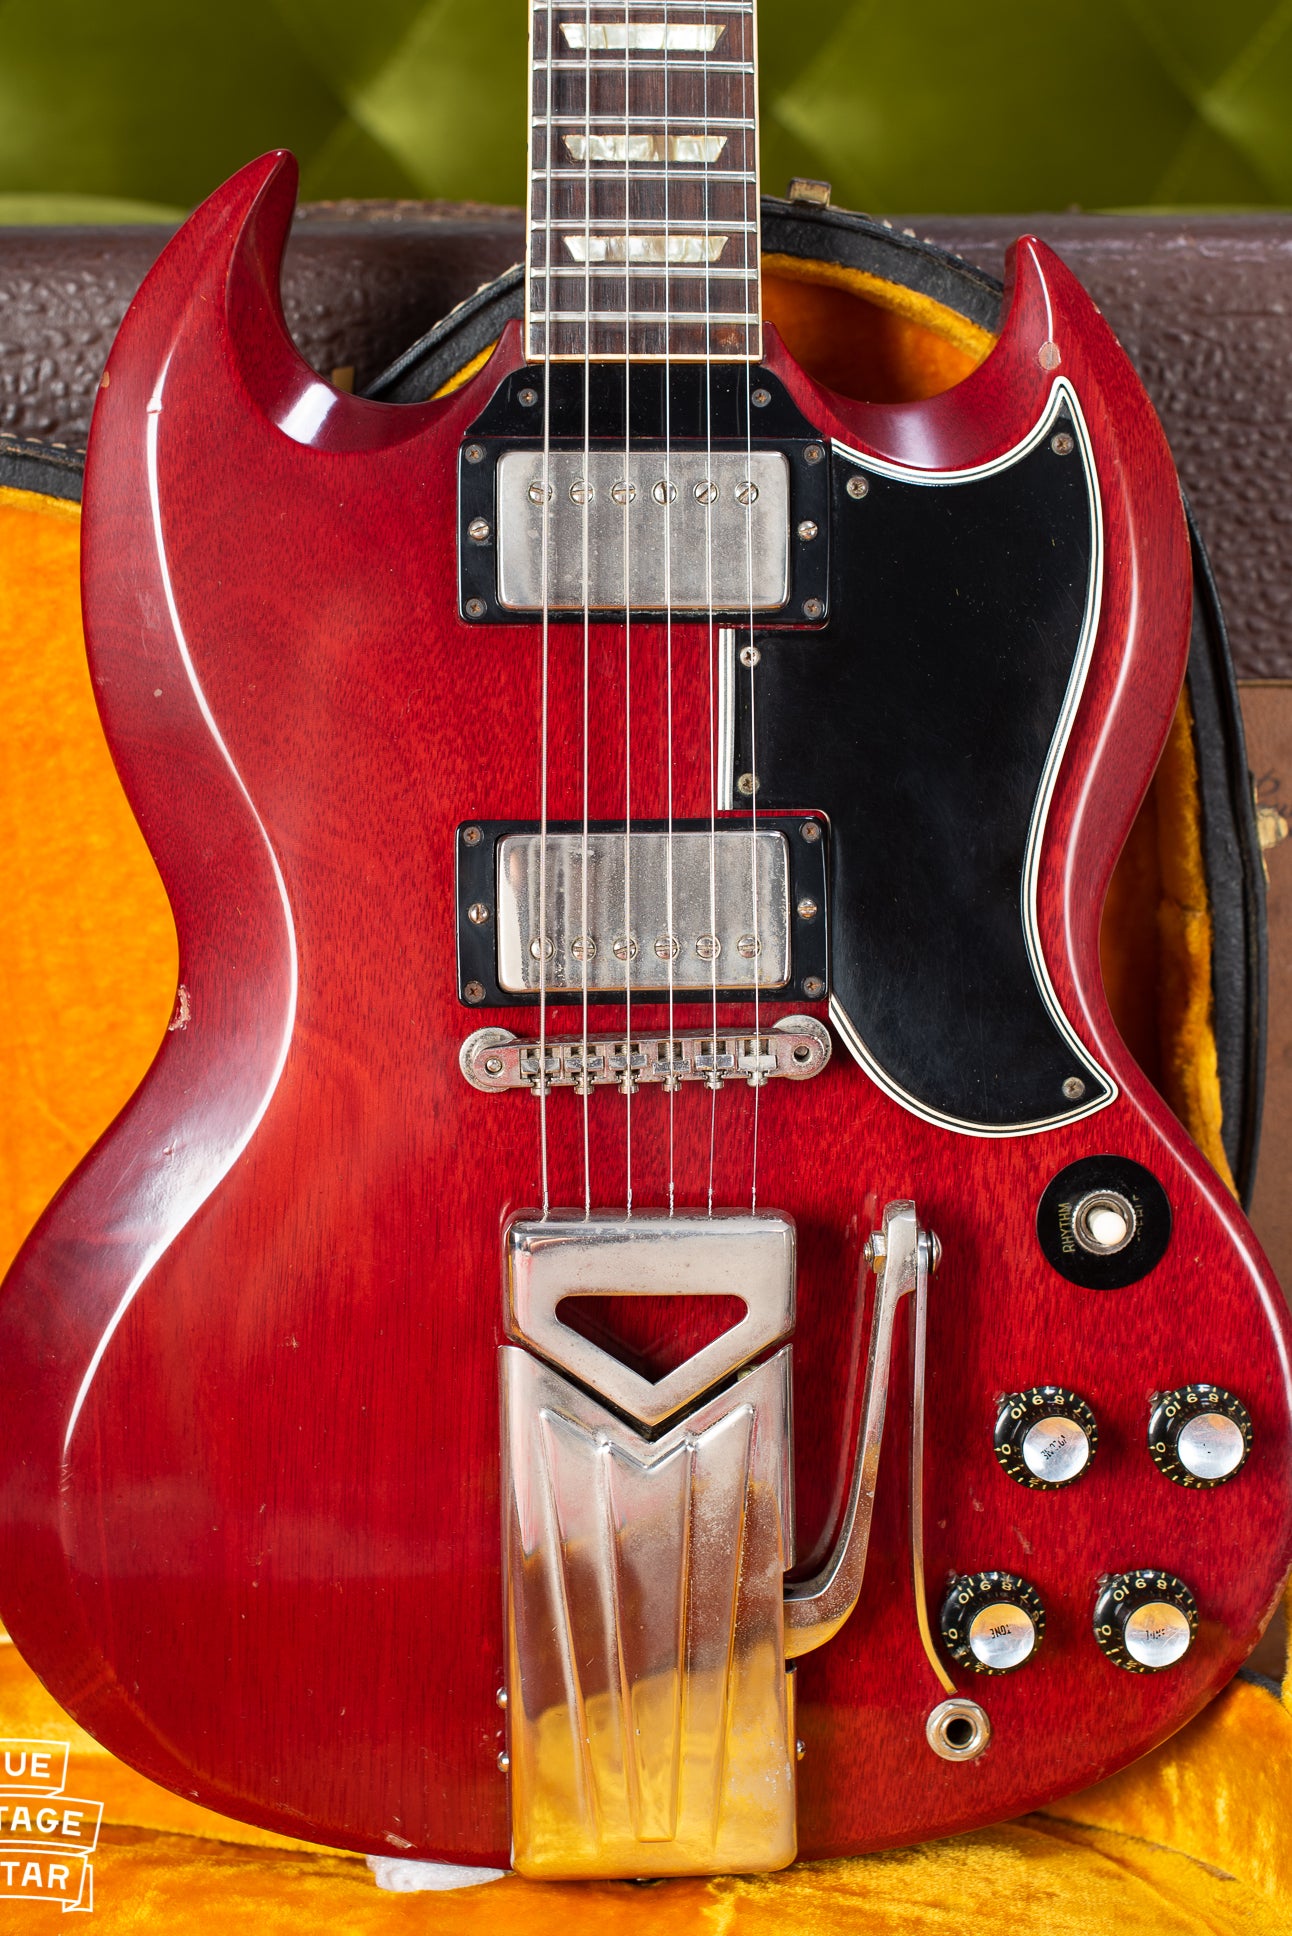 1961 Gibson Les Paul SG guitar